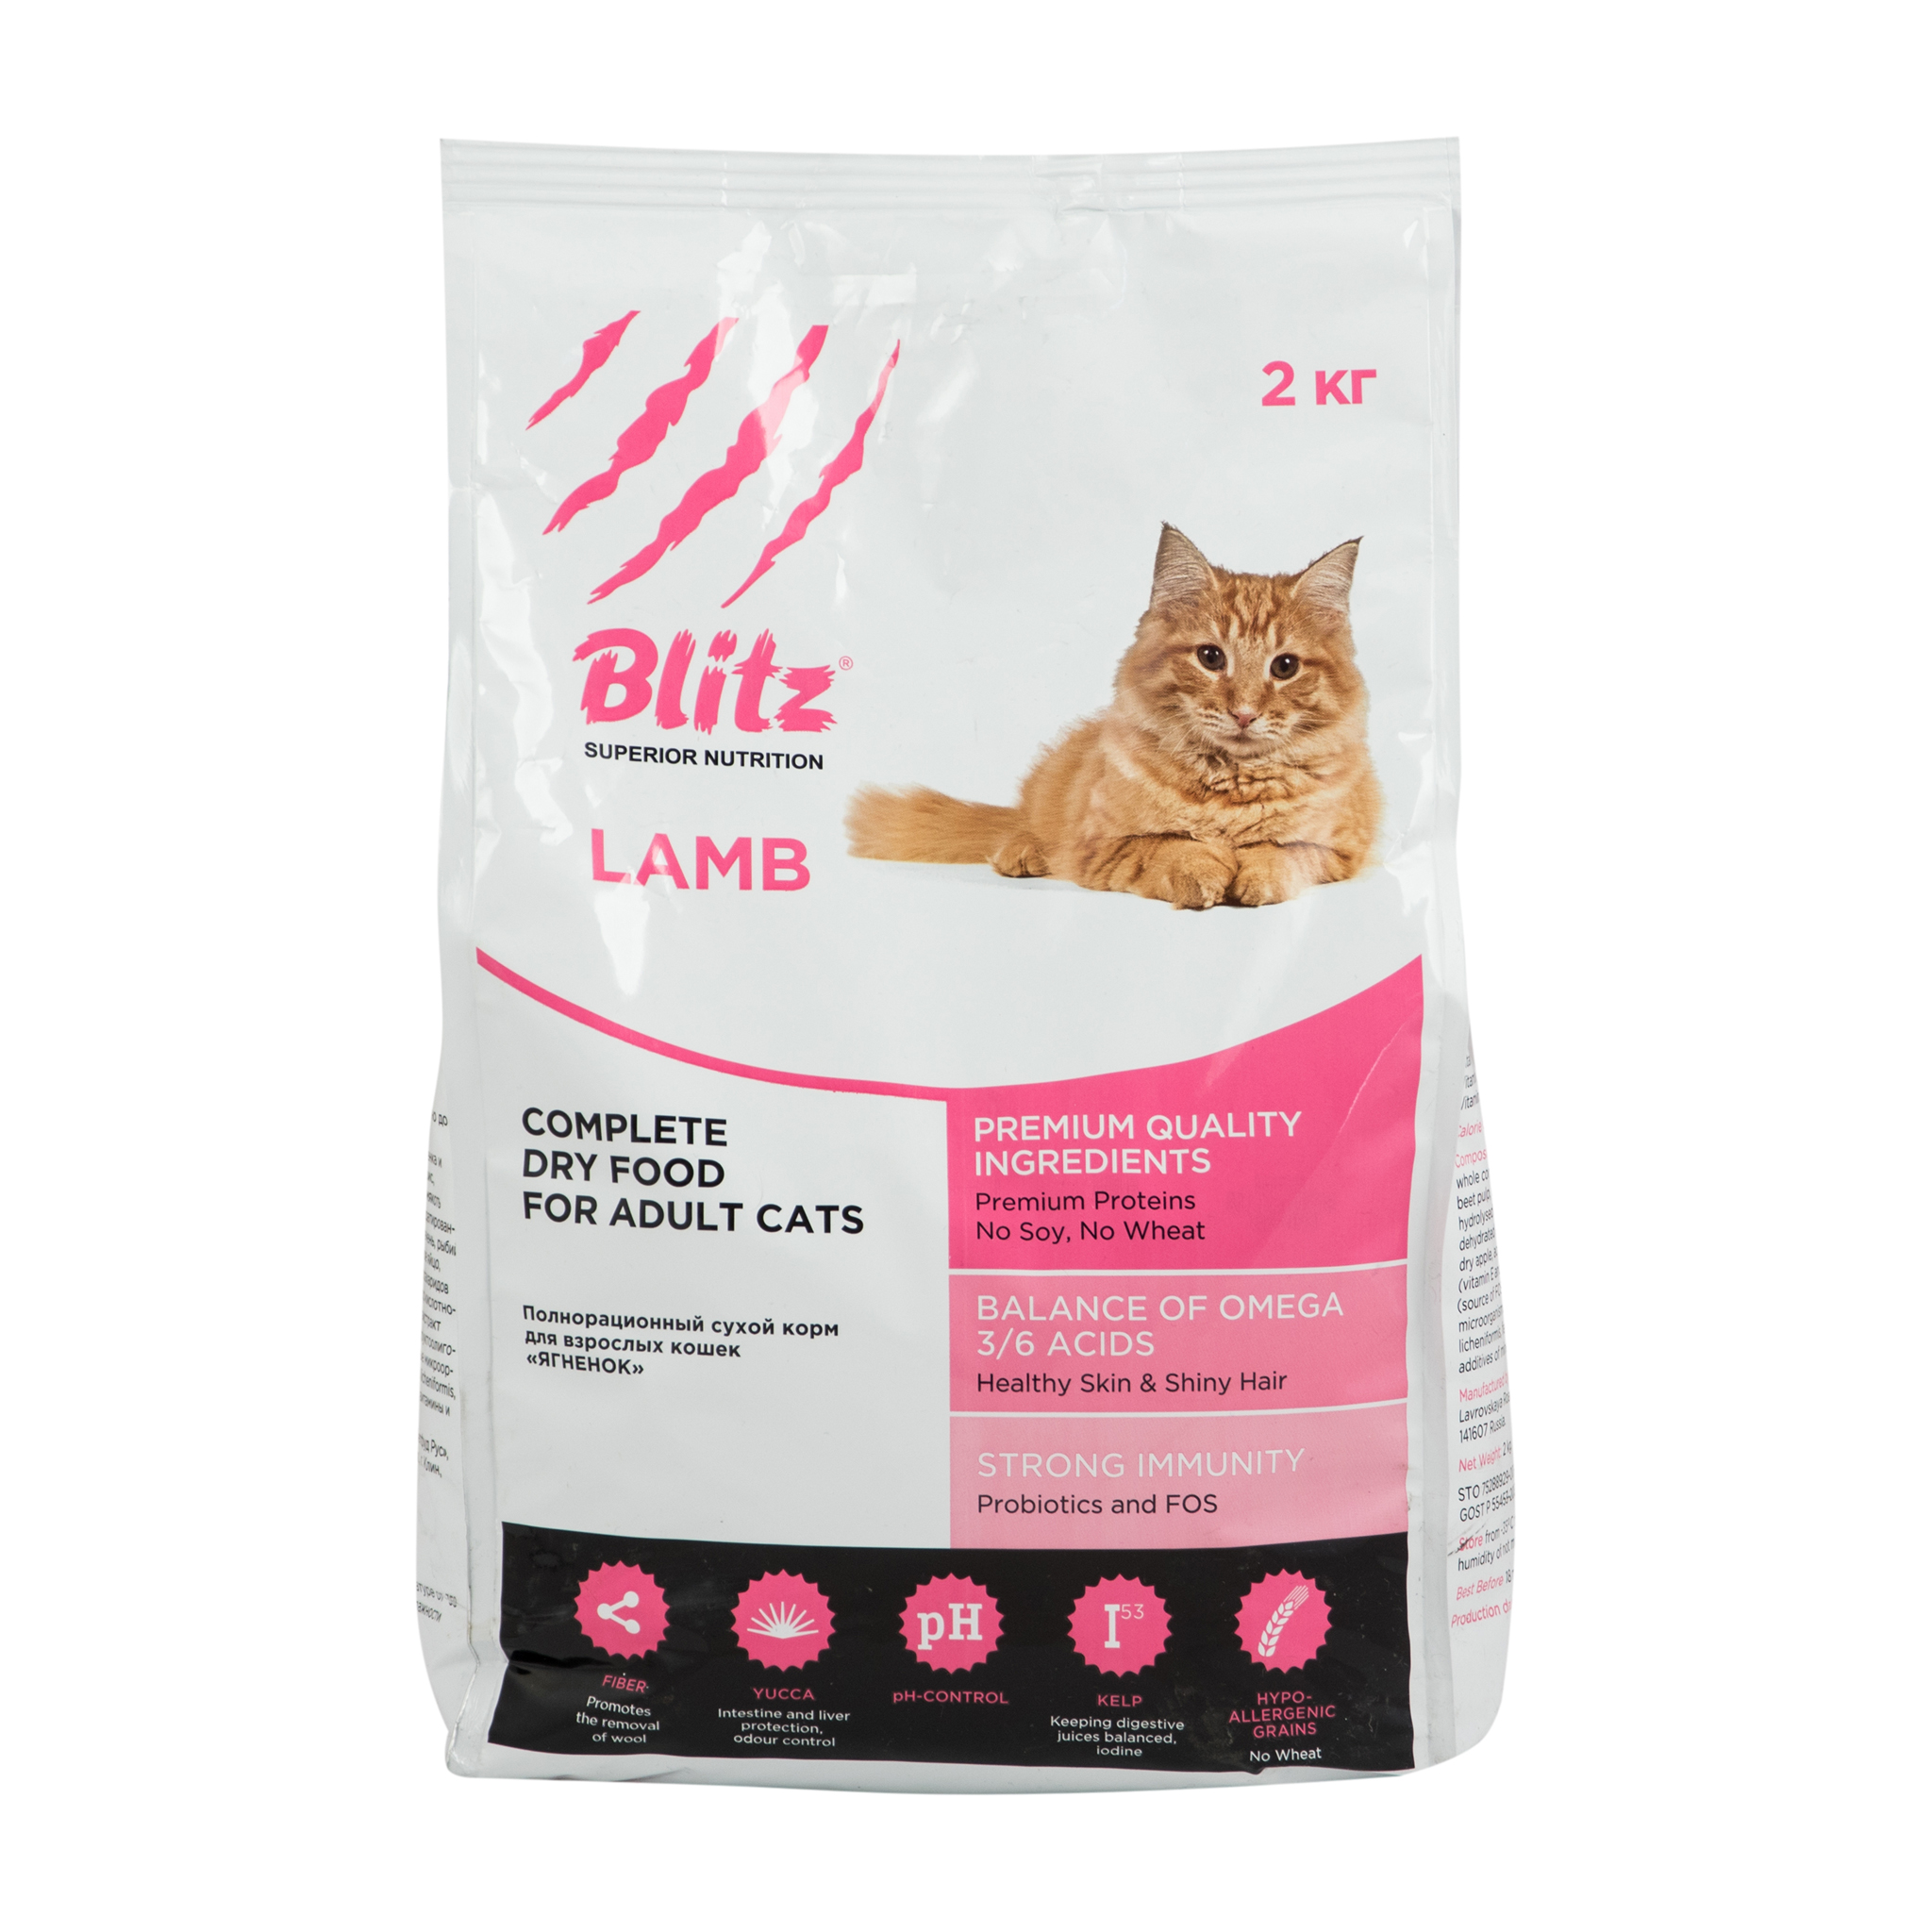 Сухой корм для кошек Blitz Ягненок - рейтинг 2,82 по отзывам экспертов ☑  Экспертиза состава и производителя | Роскачество